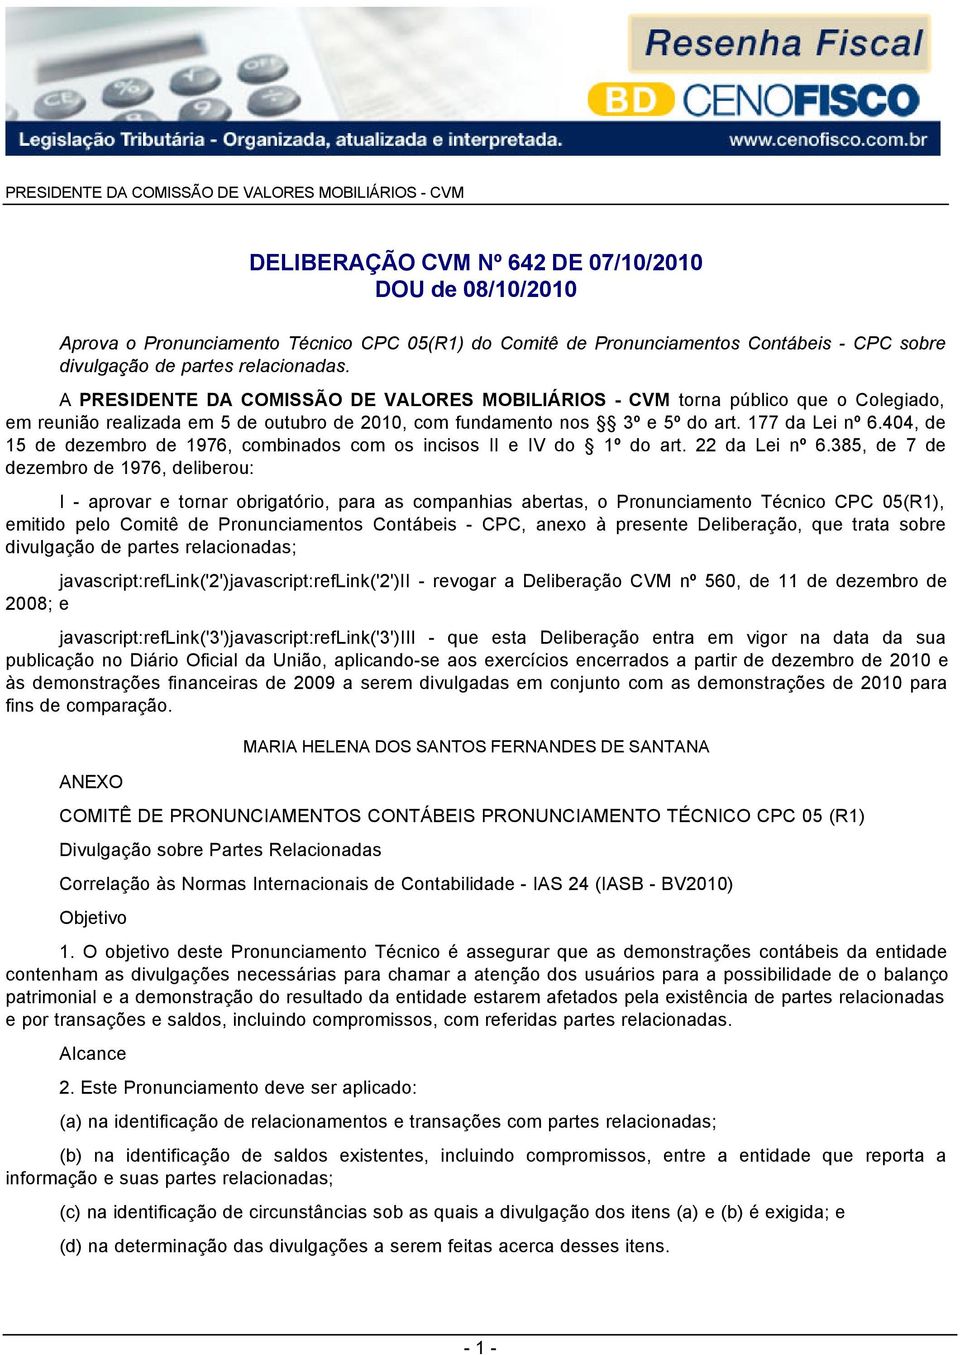 A PRESIDENTE DA COMISSÃO DE VALORES MOBILIÁRIOS - CVM torna público que o Colegiado, em reunião realizada em 5 de outubro de 2010, com fundamento nos 3º e 5º do art. 177 da Lei nº 6.